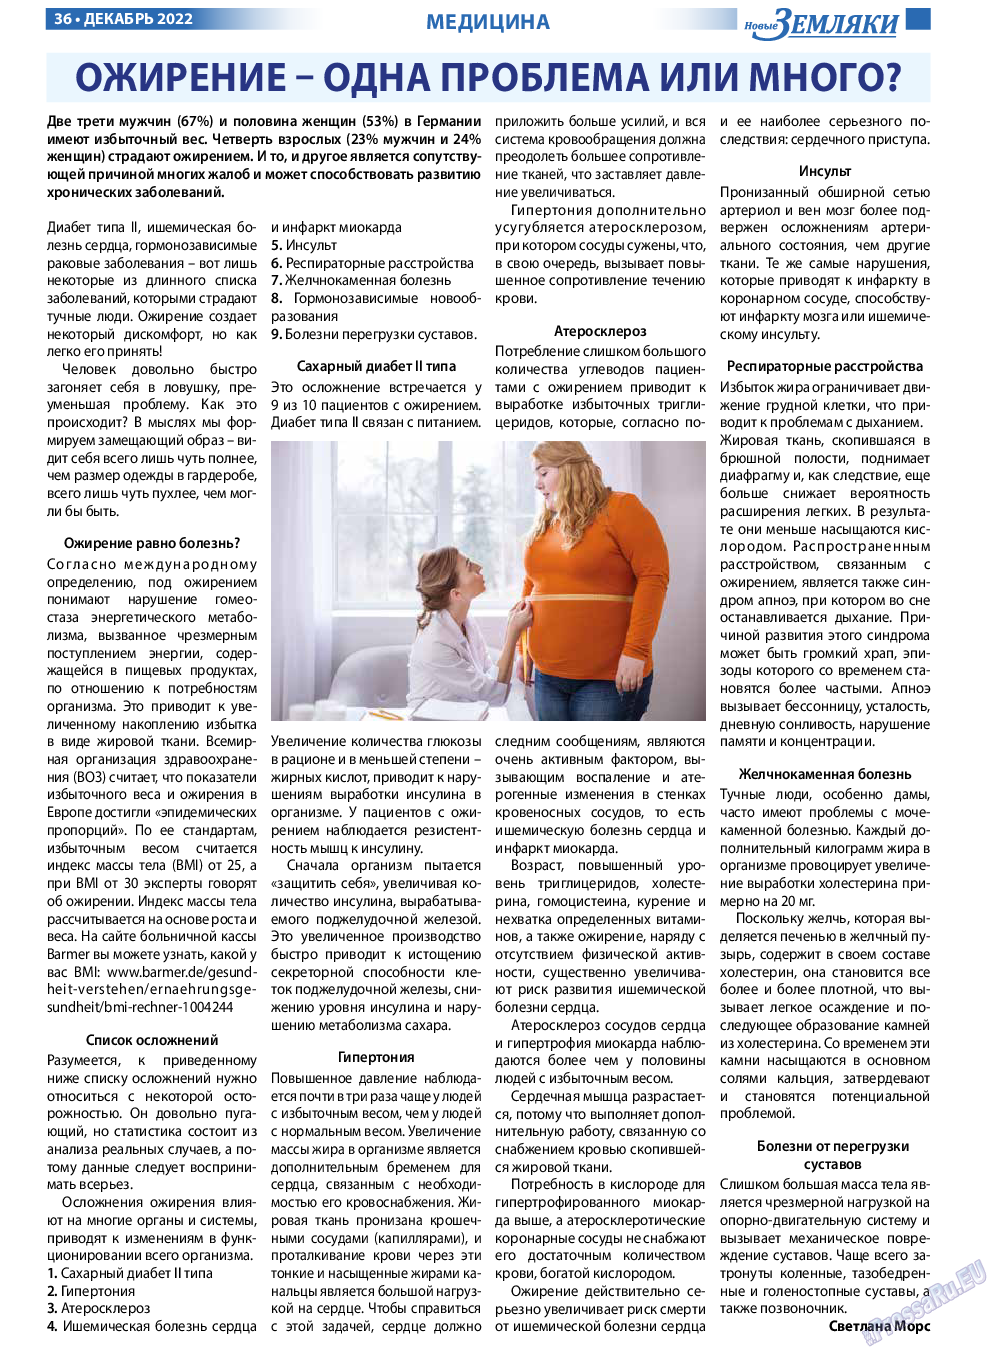 Новые Земляки, газета. 2022 №12 стр.36